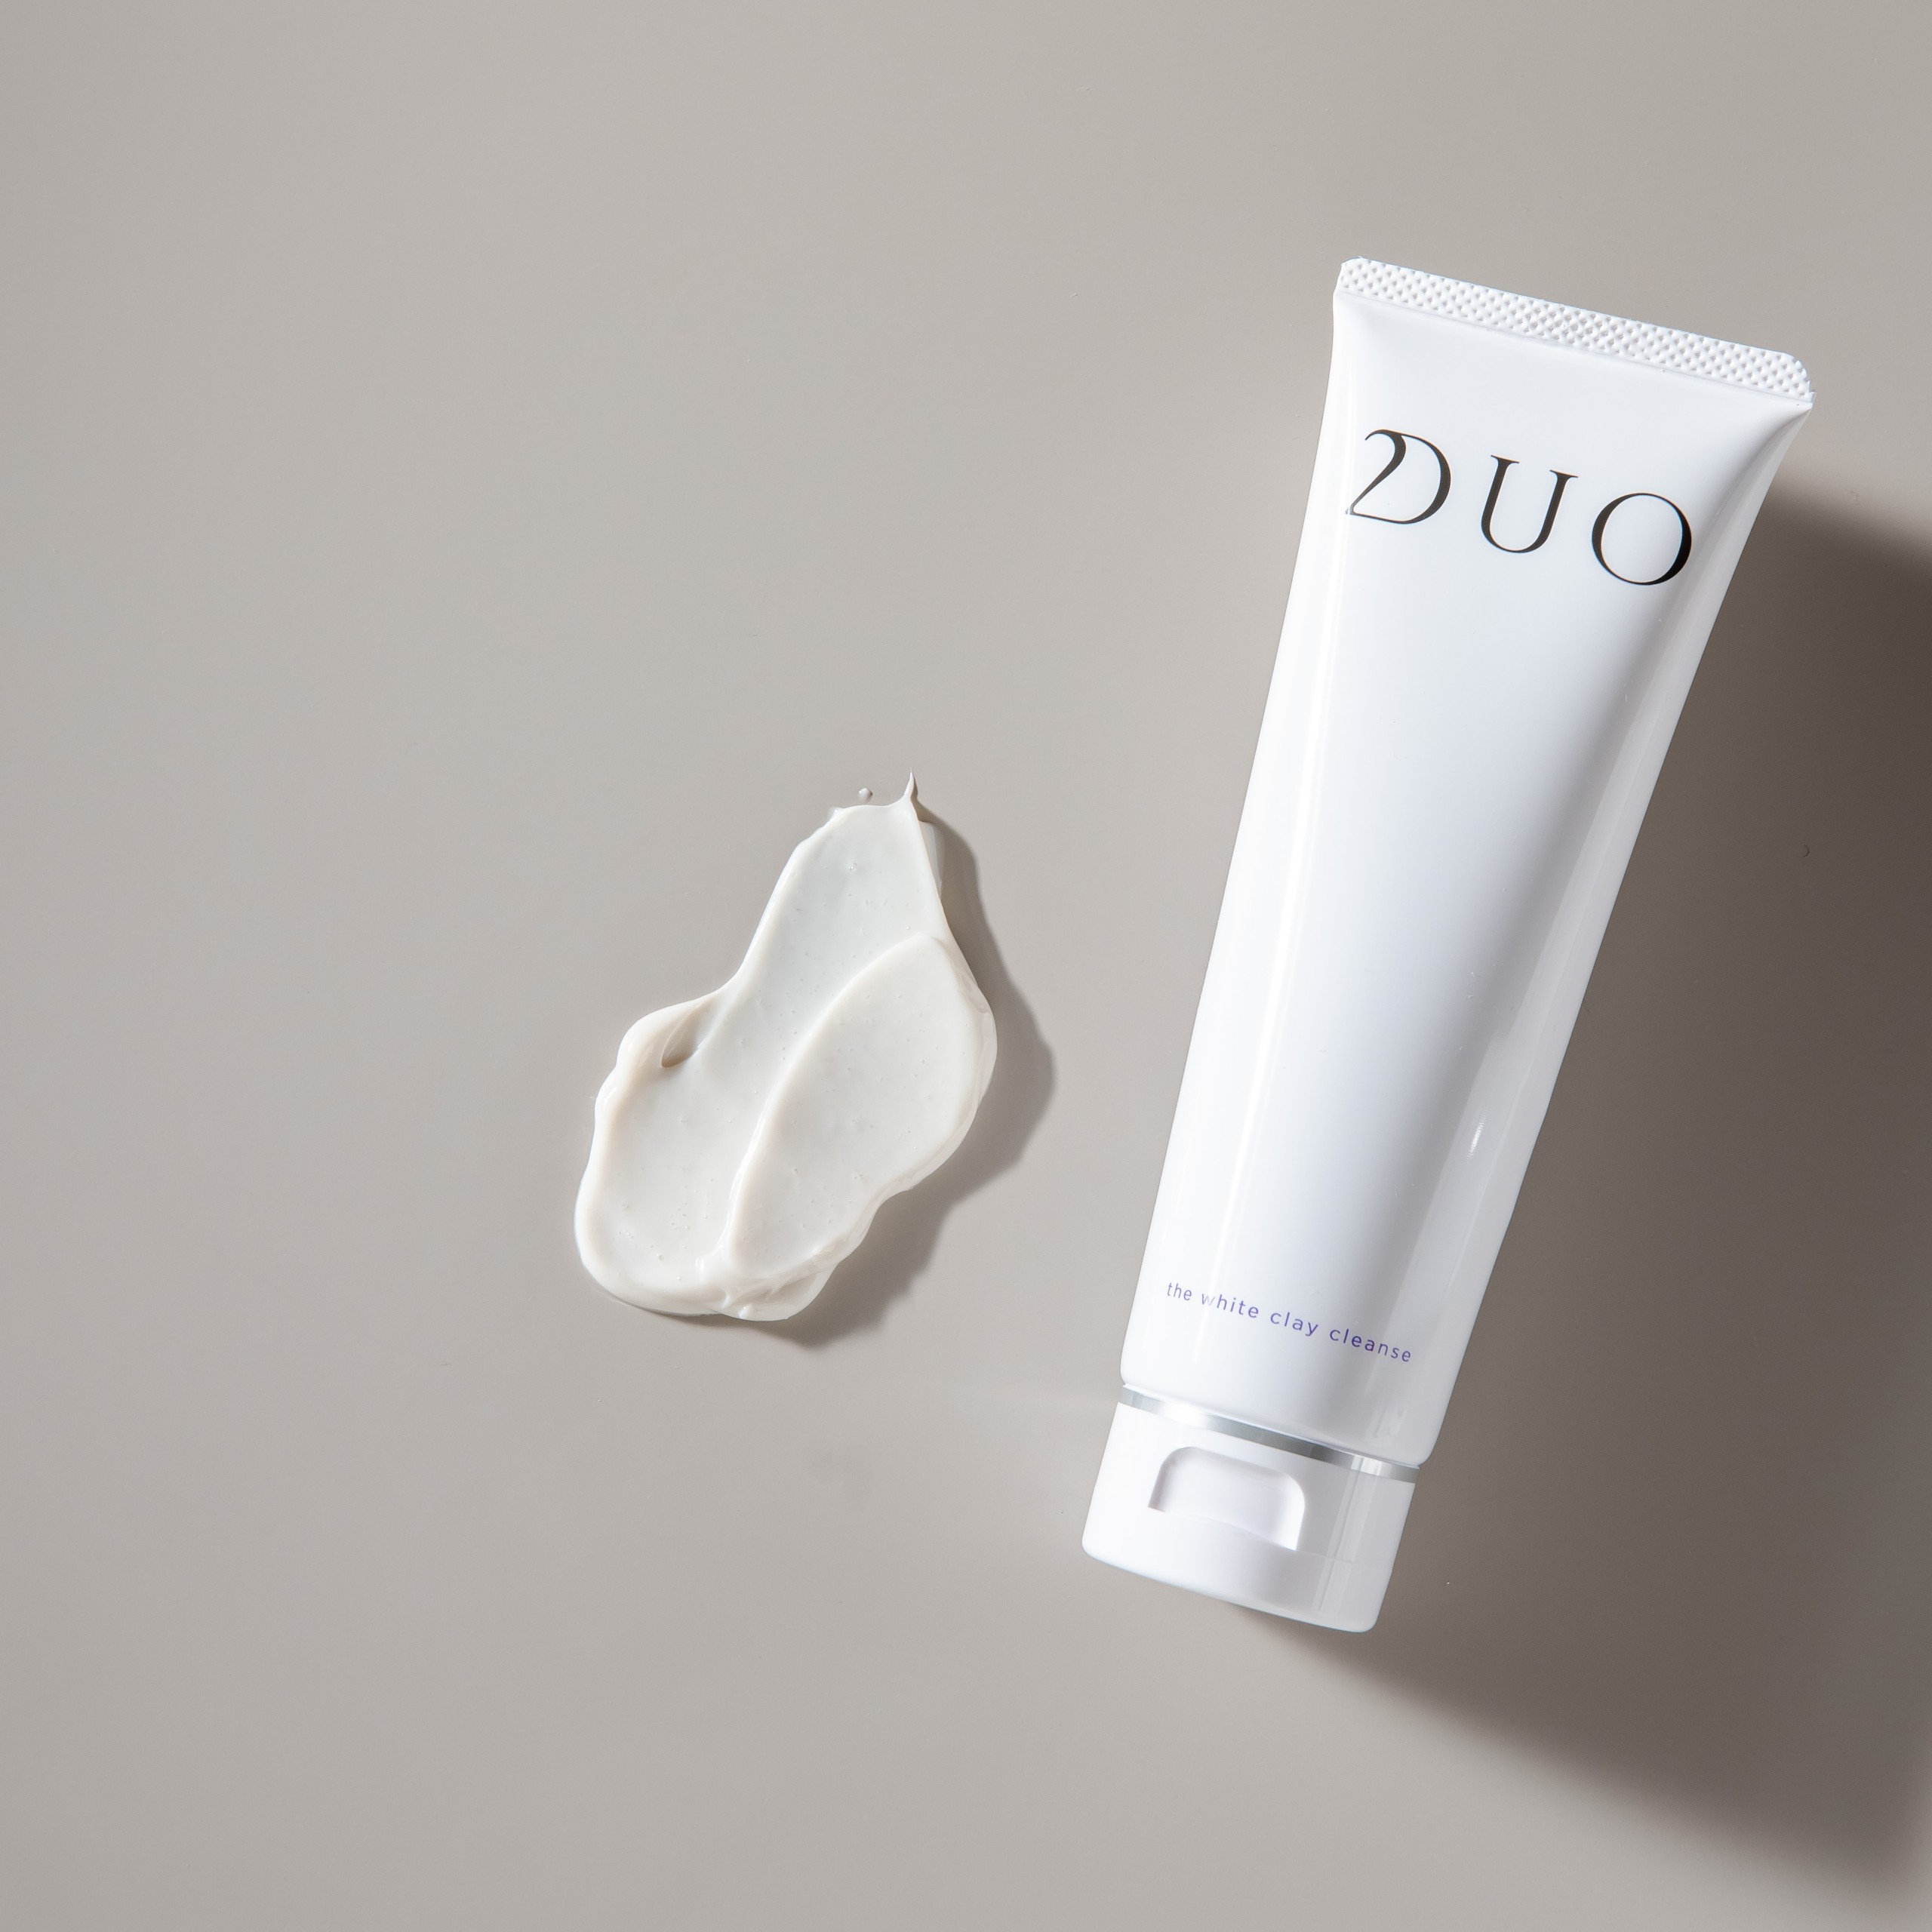 DUO洗顔料ホワイトクレイクレンズ